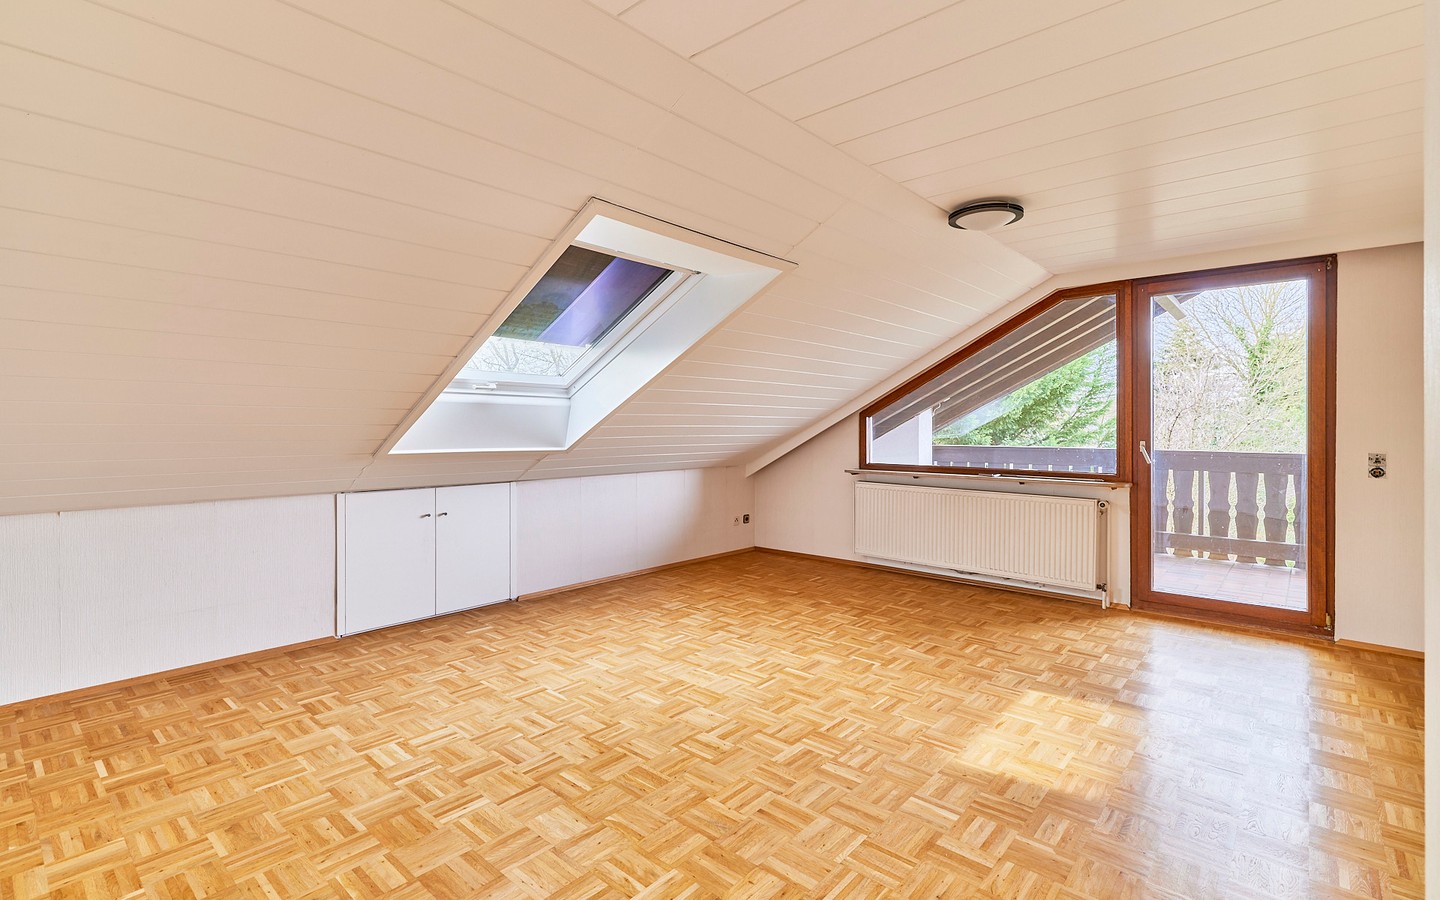 DG Zimmer 2 - Freistehendes Einfamilienhaus mit Garten und Garage in ruhiger Feldrandlage in Neckarhausen